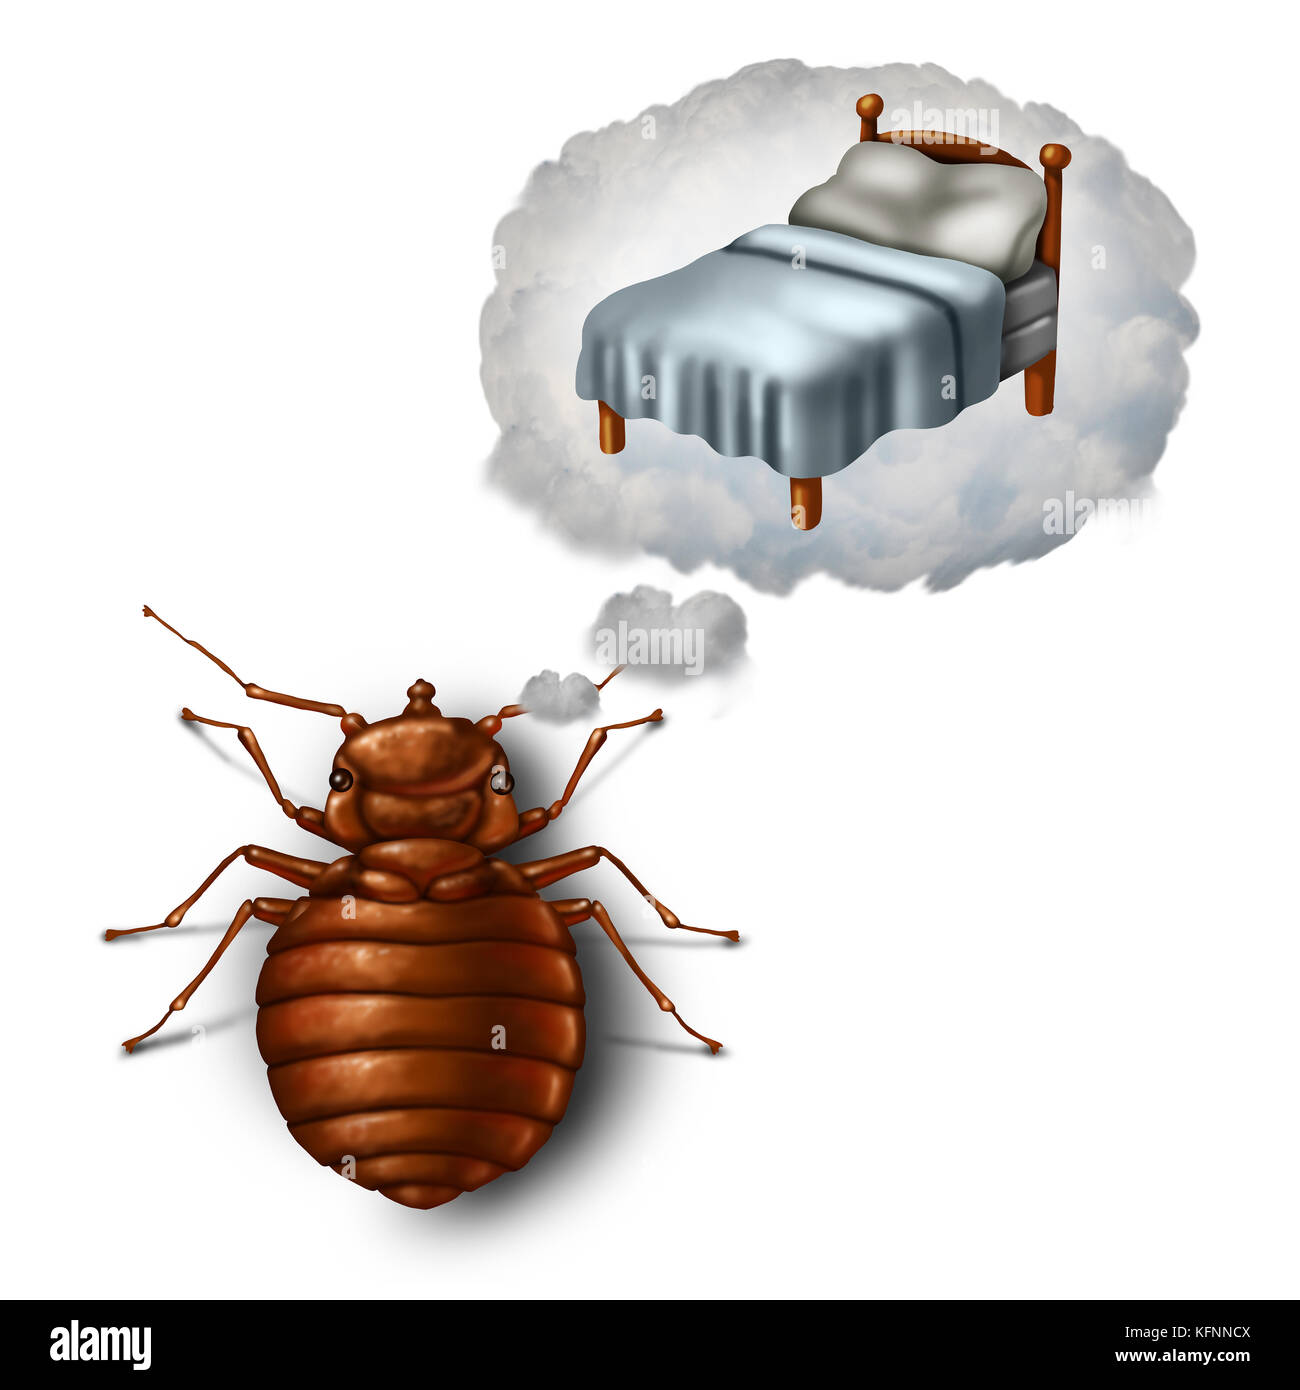 Bed bug sognare o incubo e bedbug preoccupare nozione come un insetto parassita di pest immaginando in una bolla di sogno un cuscino e fogli come un simbolo. Foto Stock